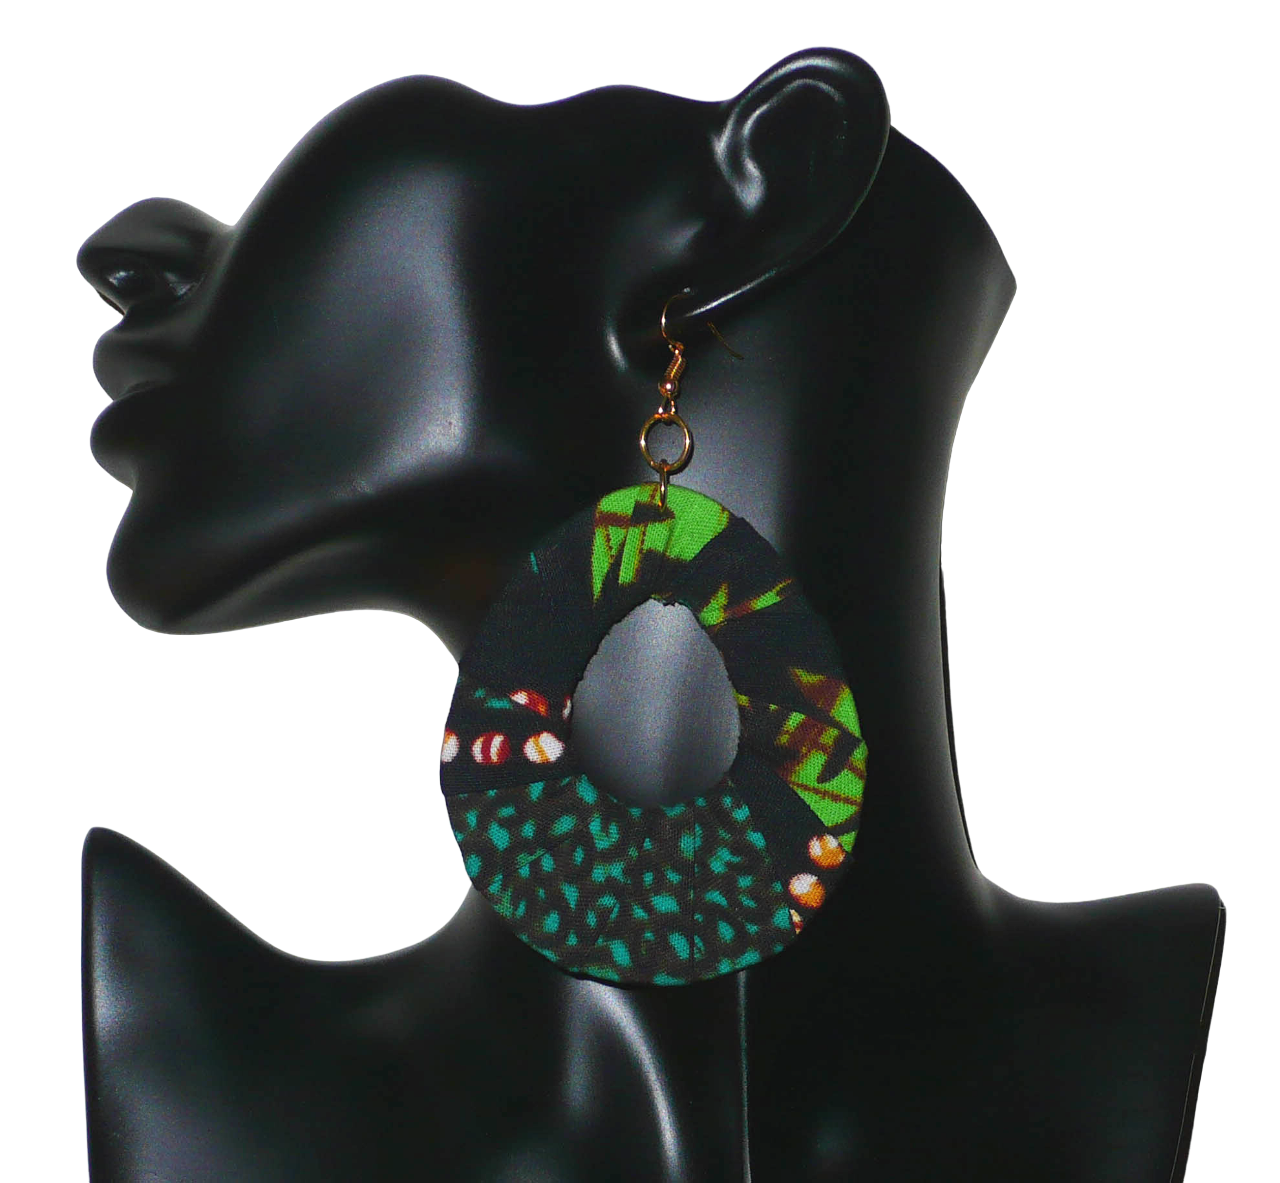 Boucles d'oreilles africaines surdimensionnées composées de bandes de tissu africain principalement vert et noir enroulées sur une structure en forme de gouttes. Elles mesurent 10,5 cm de long et 6,5 cm de large et se portent avec des crochets en acier inoxydable sur des oreilles percées. Les boucles d'oreilles sont ici photographiées sur un mannequin. Timeless Fineries